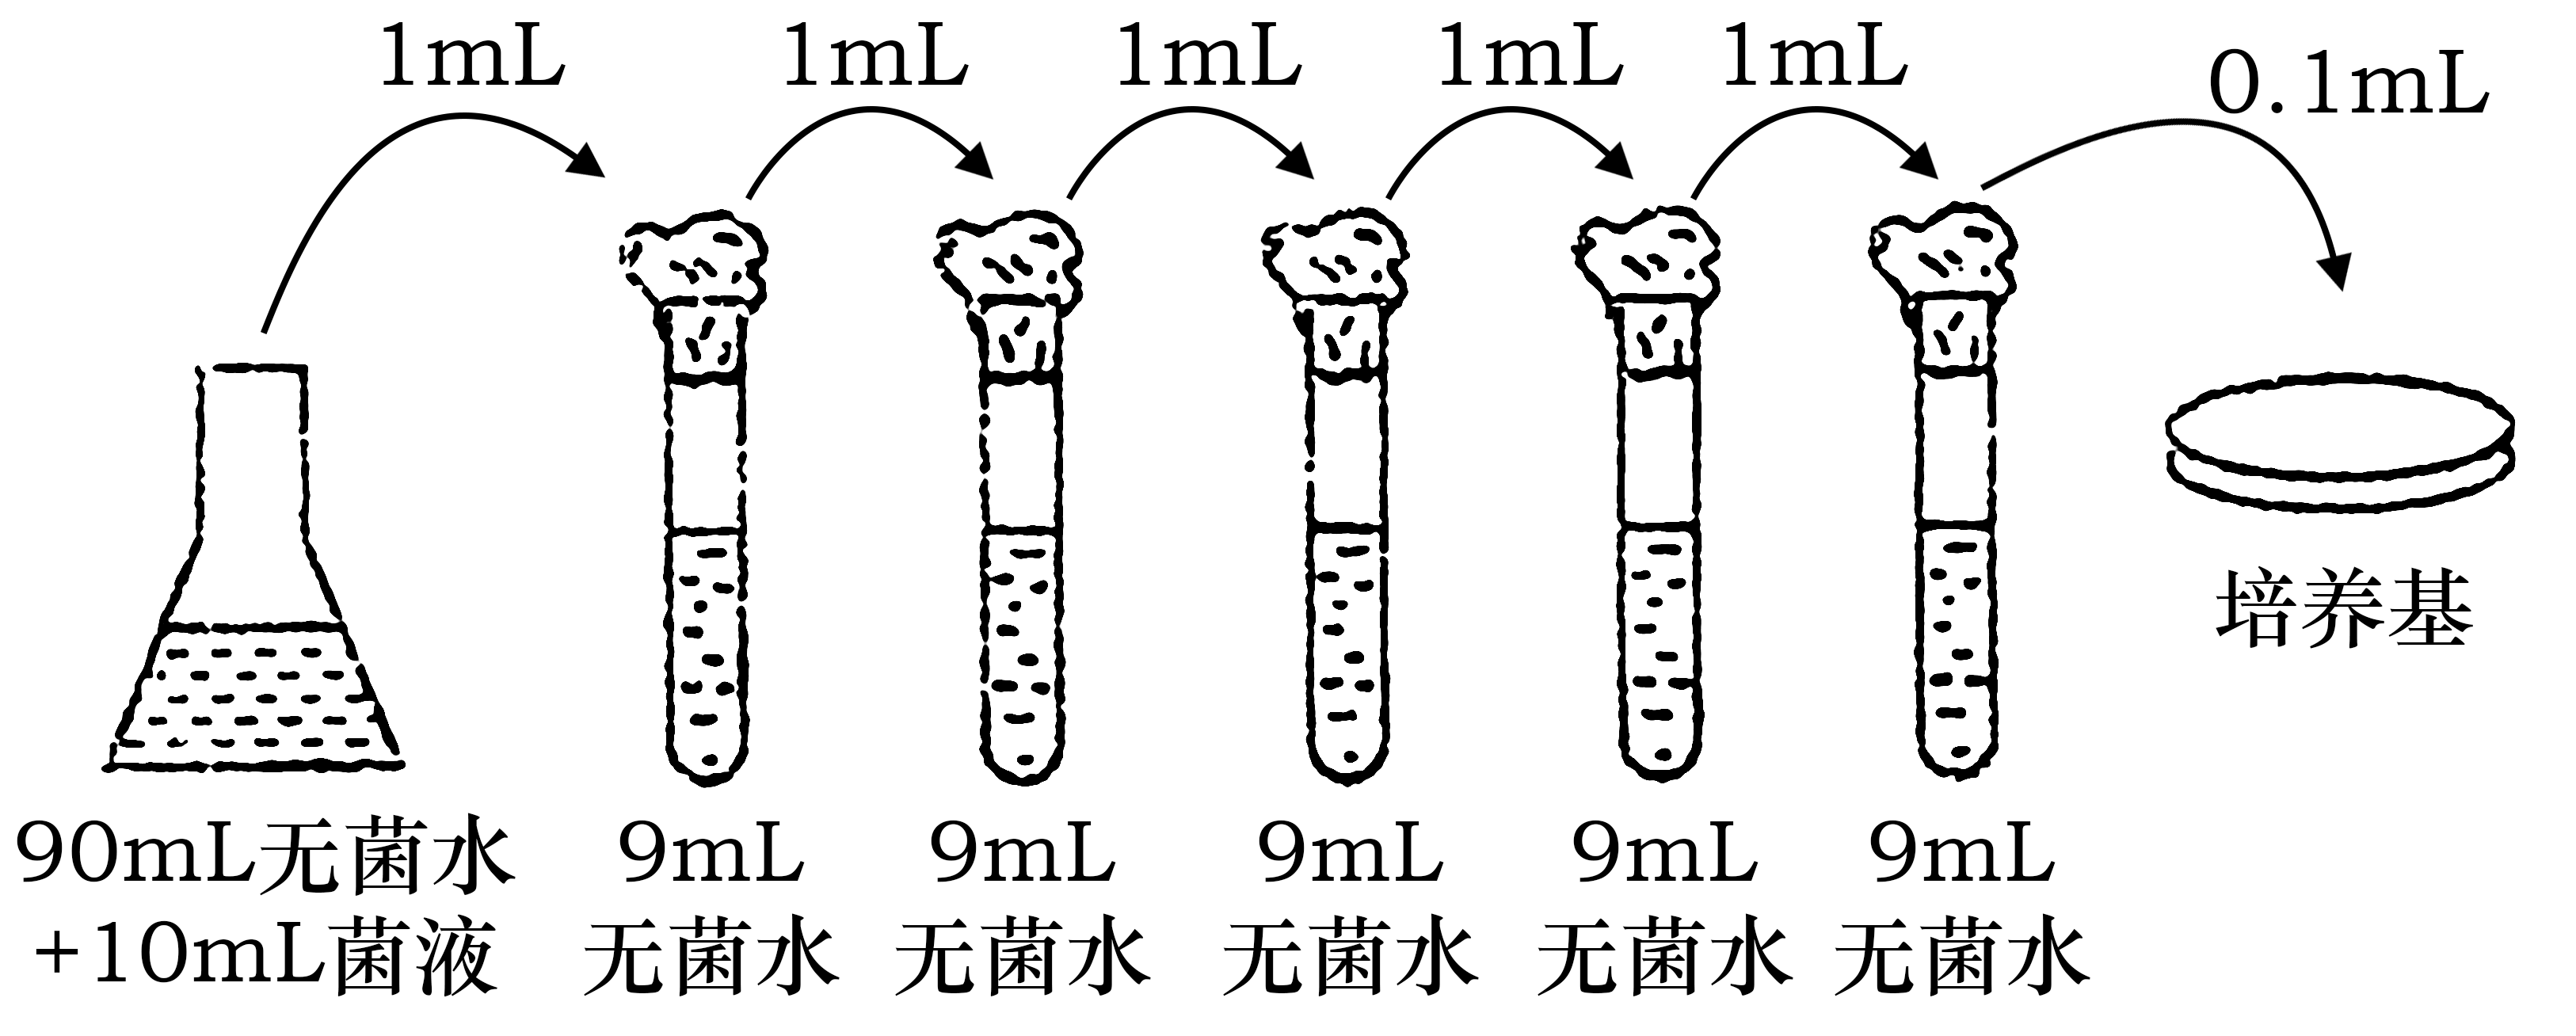 菌株abc特点ph≤35时,生长代谢正常,优于其他常规菌种ph≤3